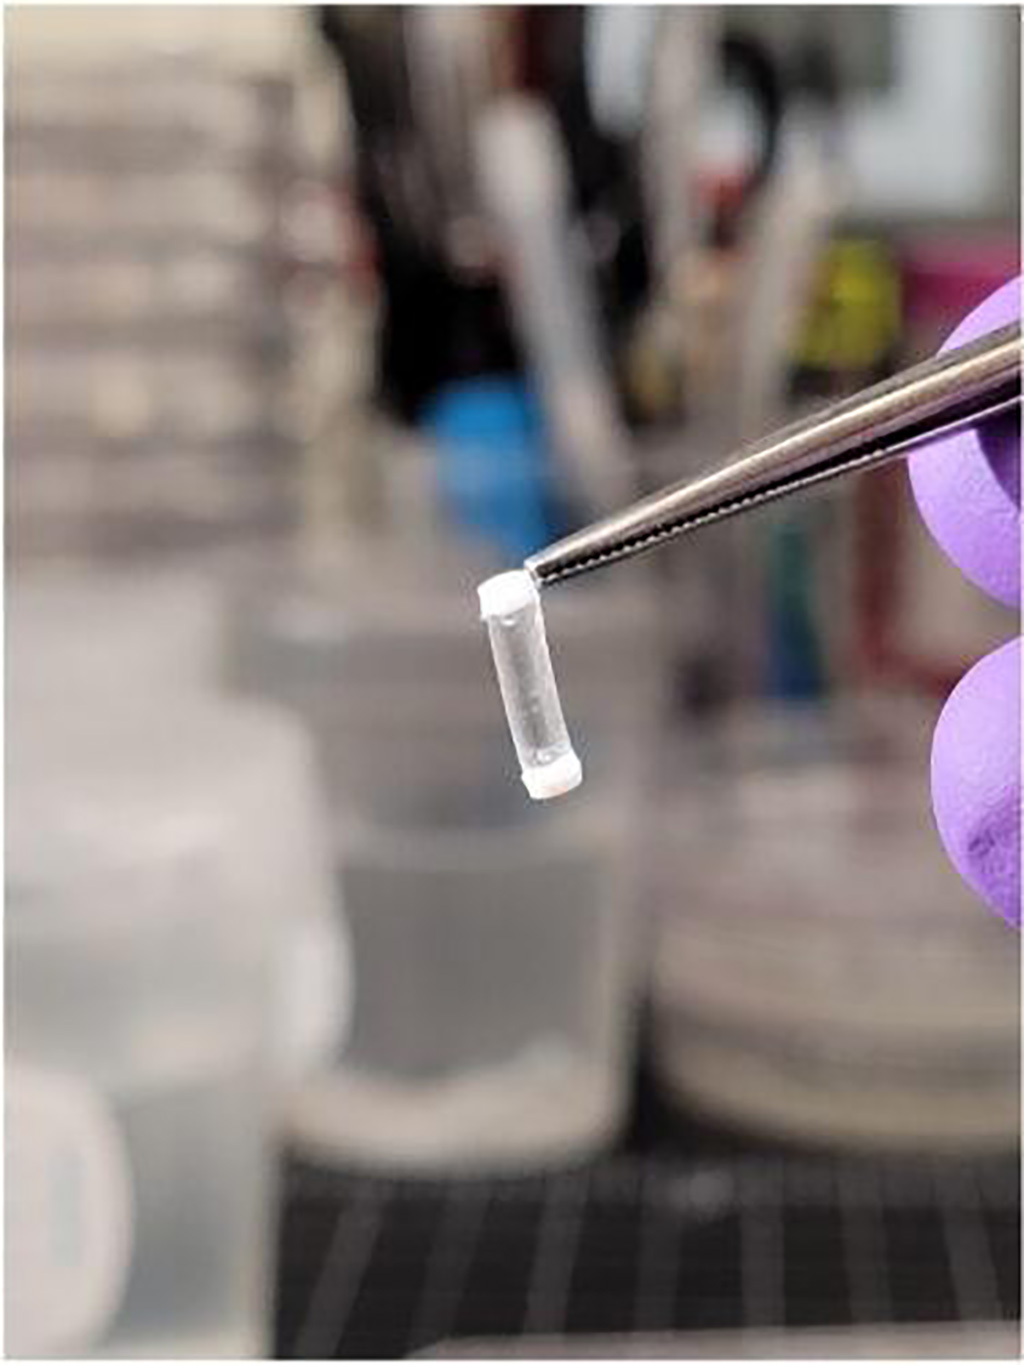 Imagen: El tamaño e inyectabilidad del biosensor permite un método menos invasivo para monitorear la glucosa en sangre (Fotografía cortesía de la Dra. Melissa Grunlan)